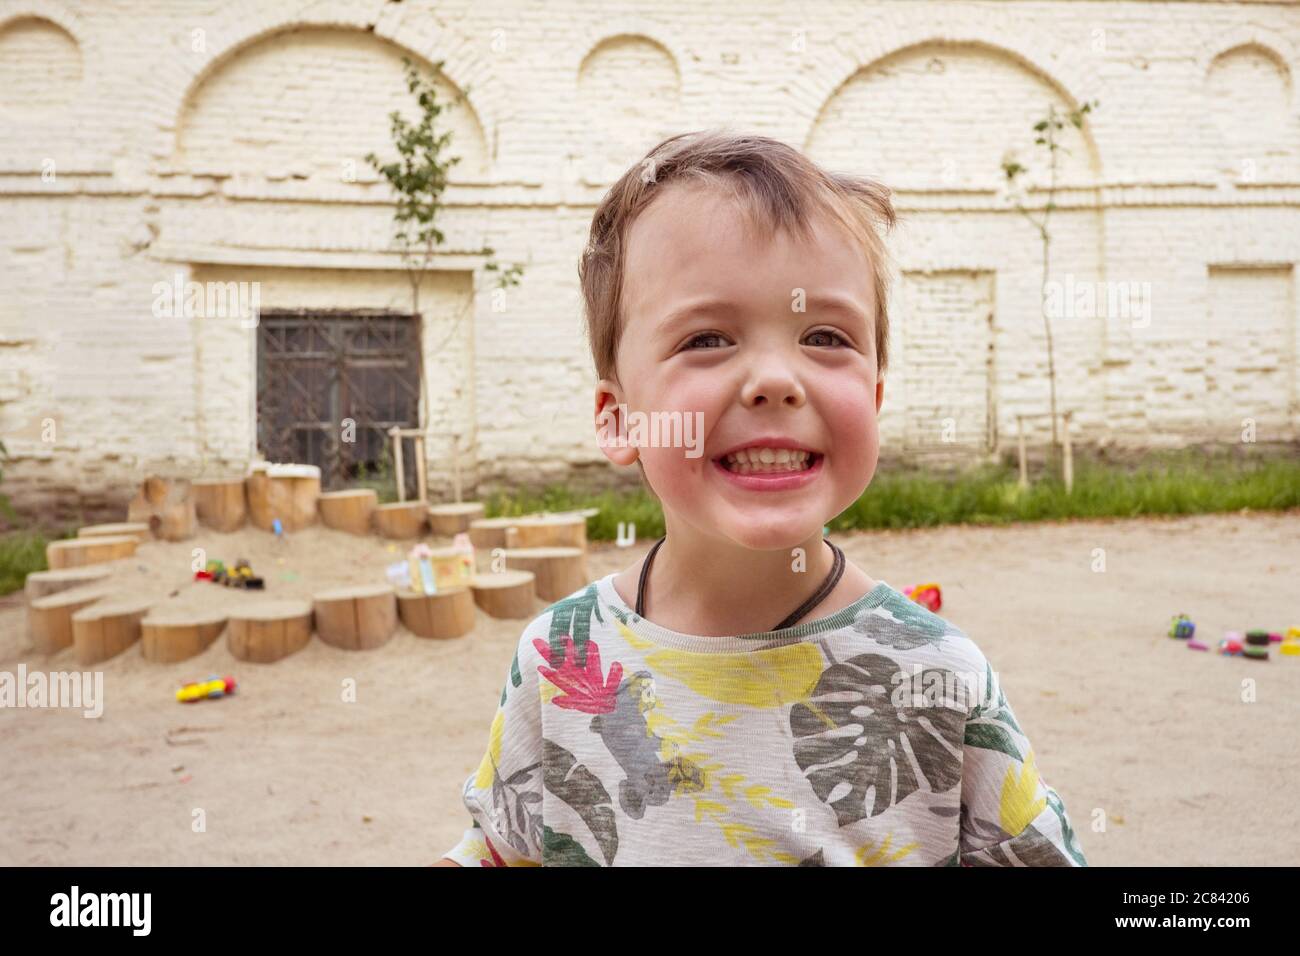 Cheerful kid standing on playground Stock Photo